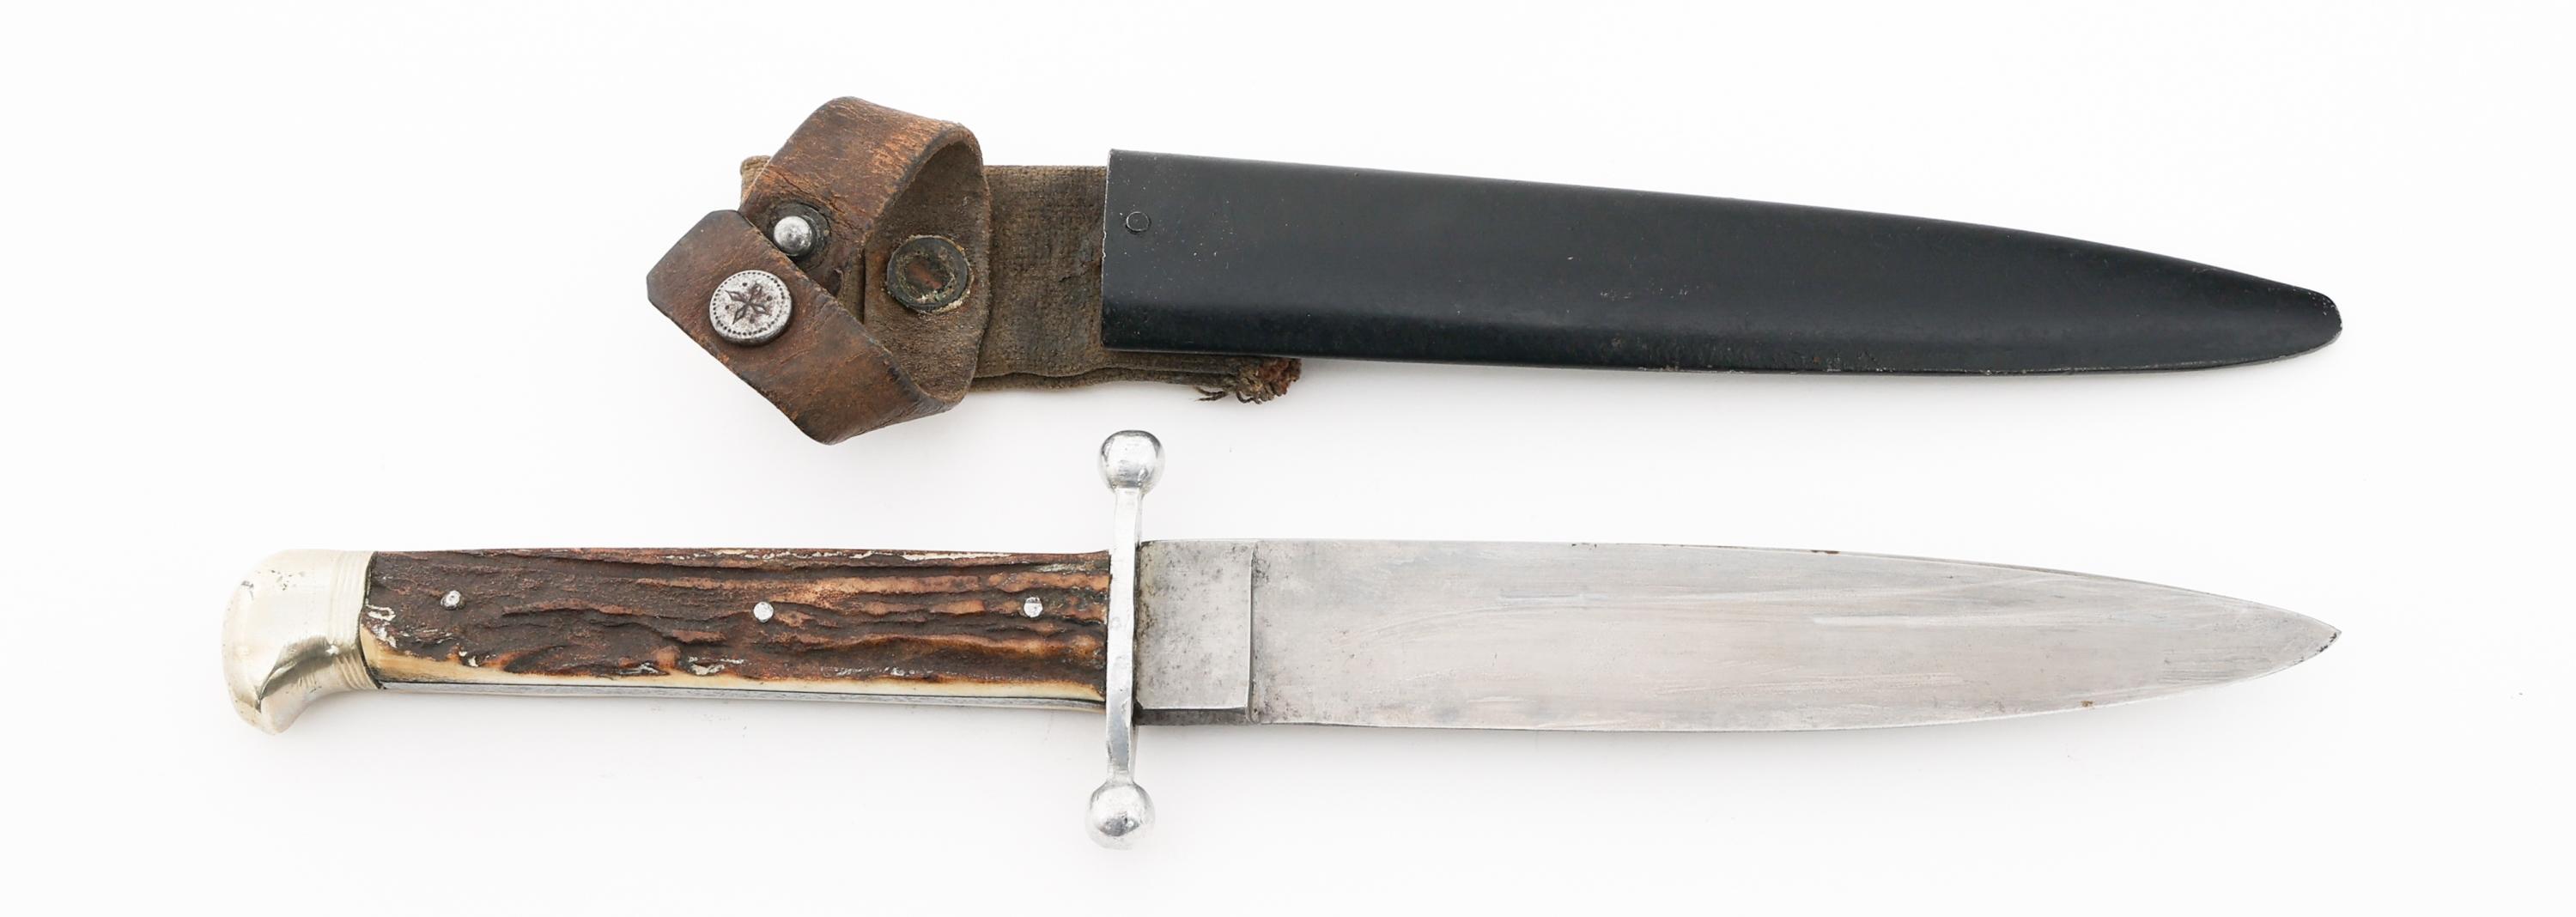 WWI IMPERIAL GERMAN BOOT KNIFE by ANTON WINGEN JR